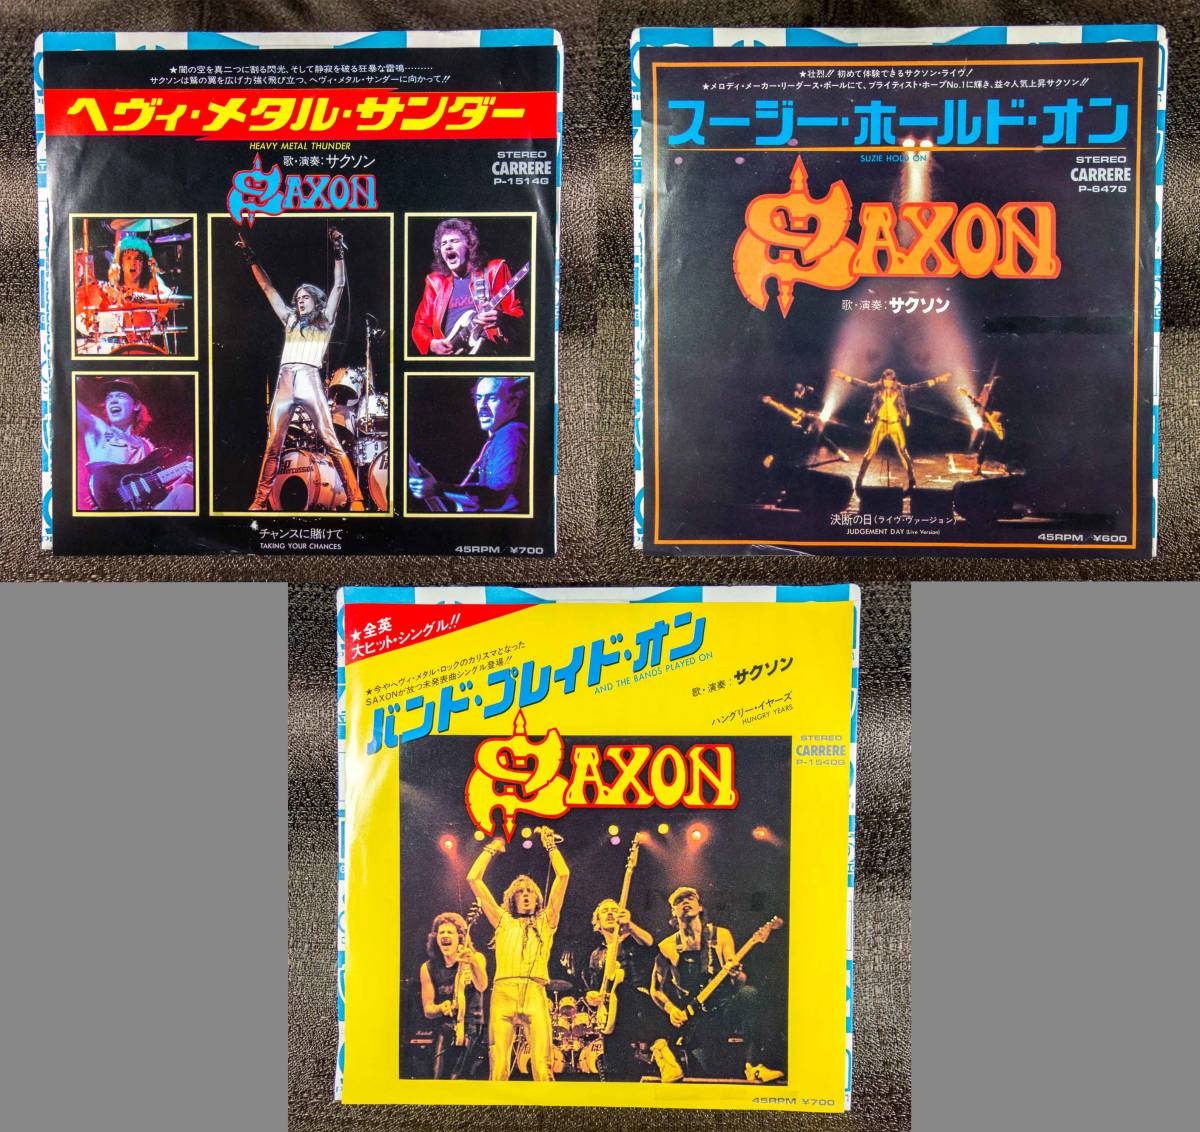 ヤフオク! -「saxon」(レコード) の落札相場・落札価格